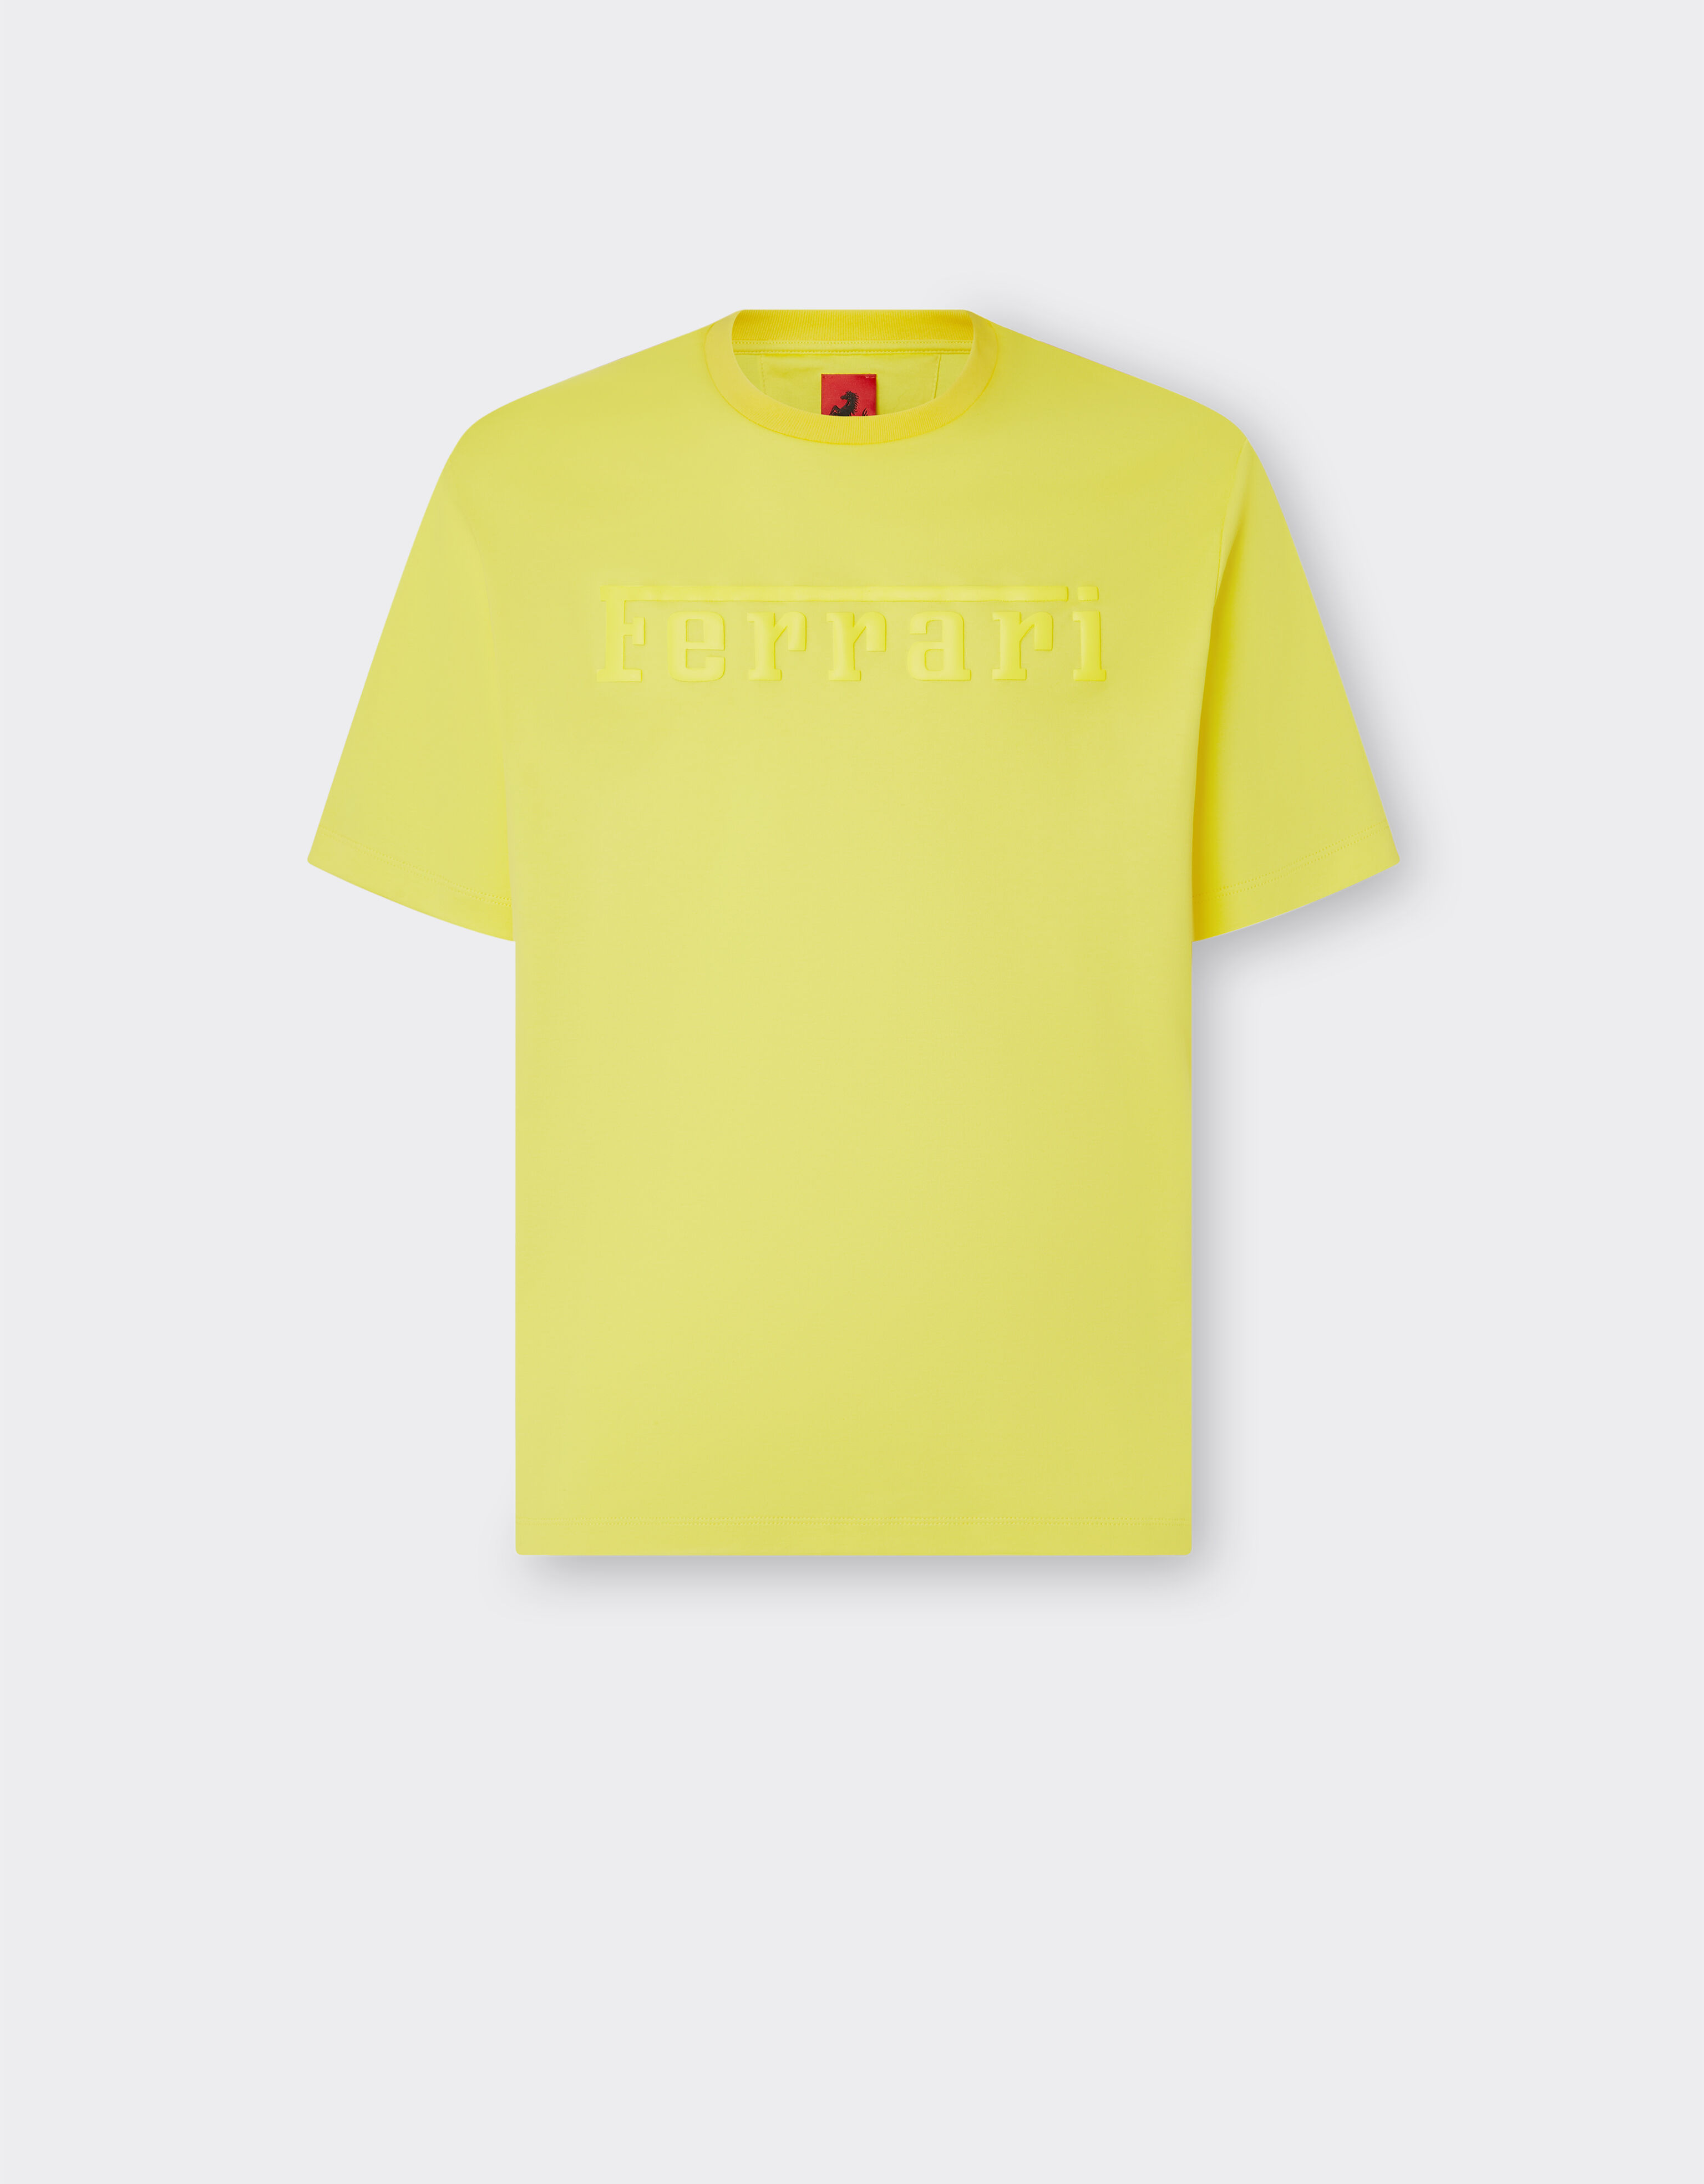 Ferrari T-shirt en coton avec logo Ferrari Giallo Modena 48115f